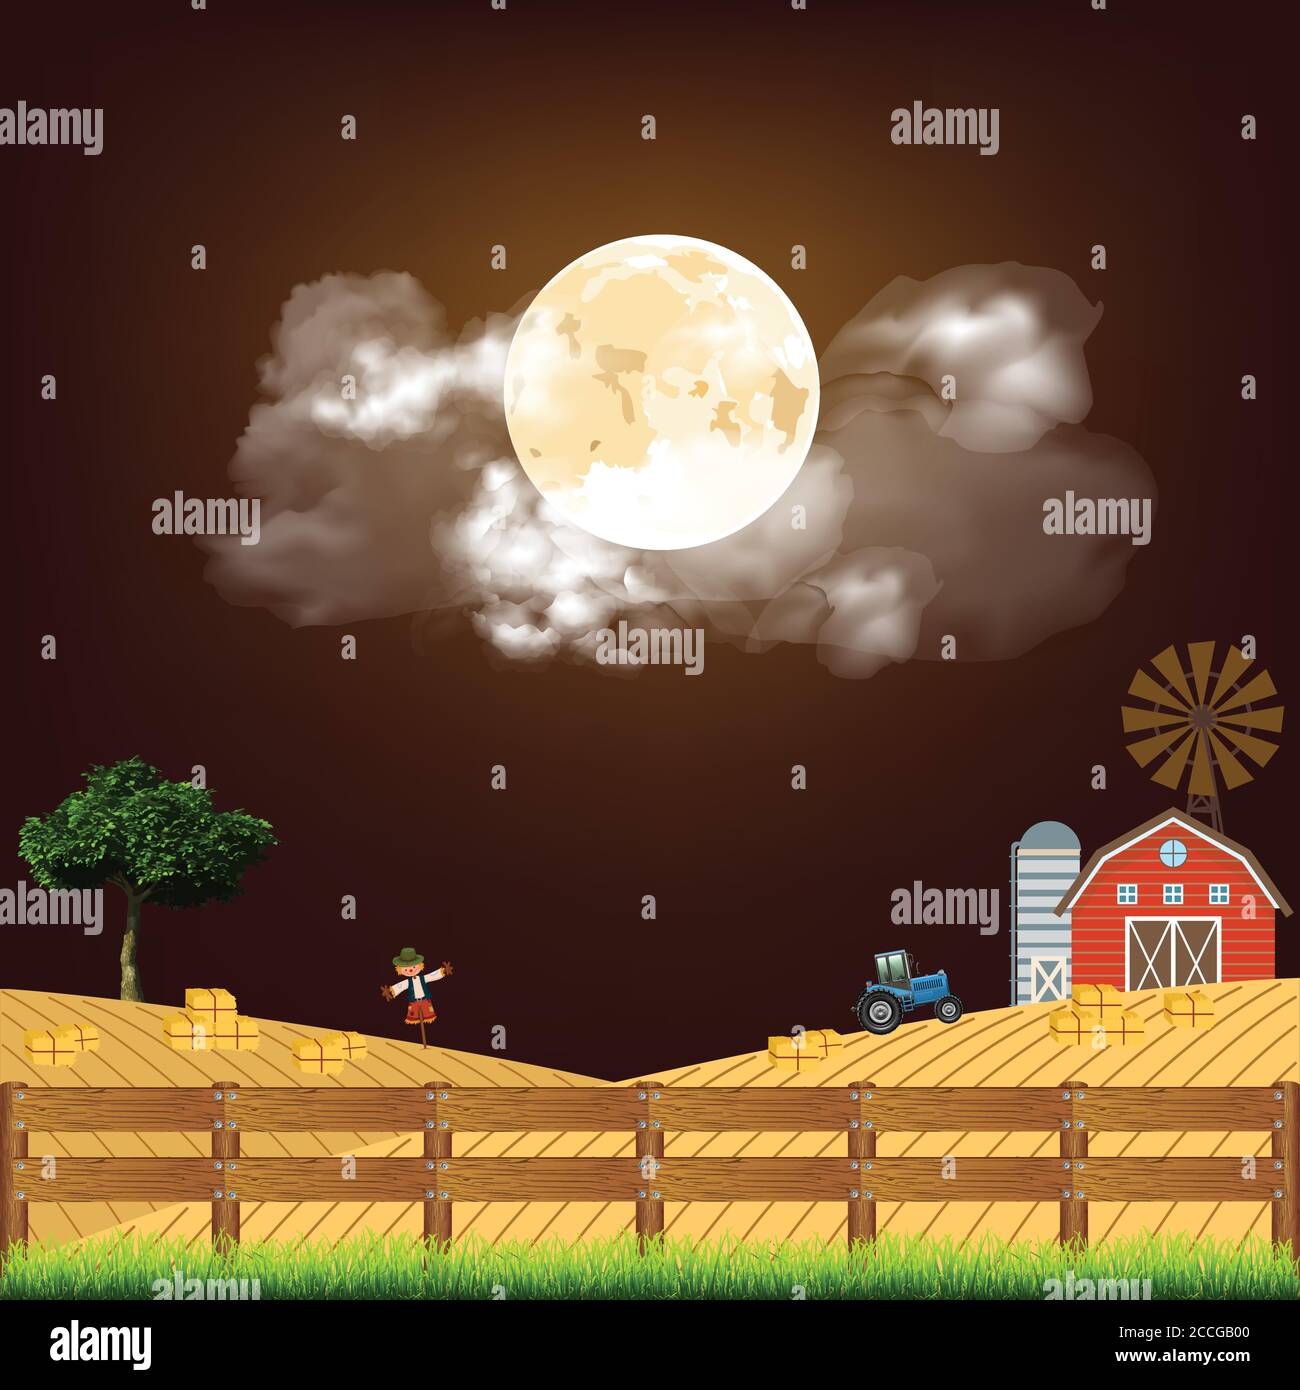 Pintoresca escena rural en el momento de la cosecha con fardos de hay puesto contra un cielo nocturno de luna llena Ilustración del Vector